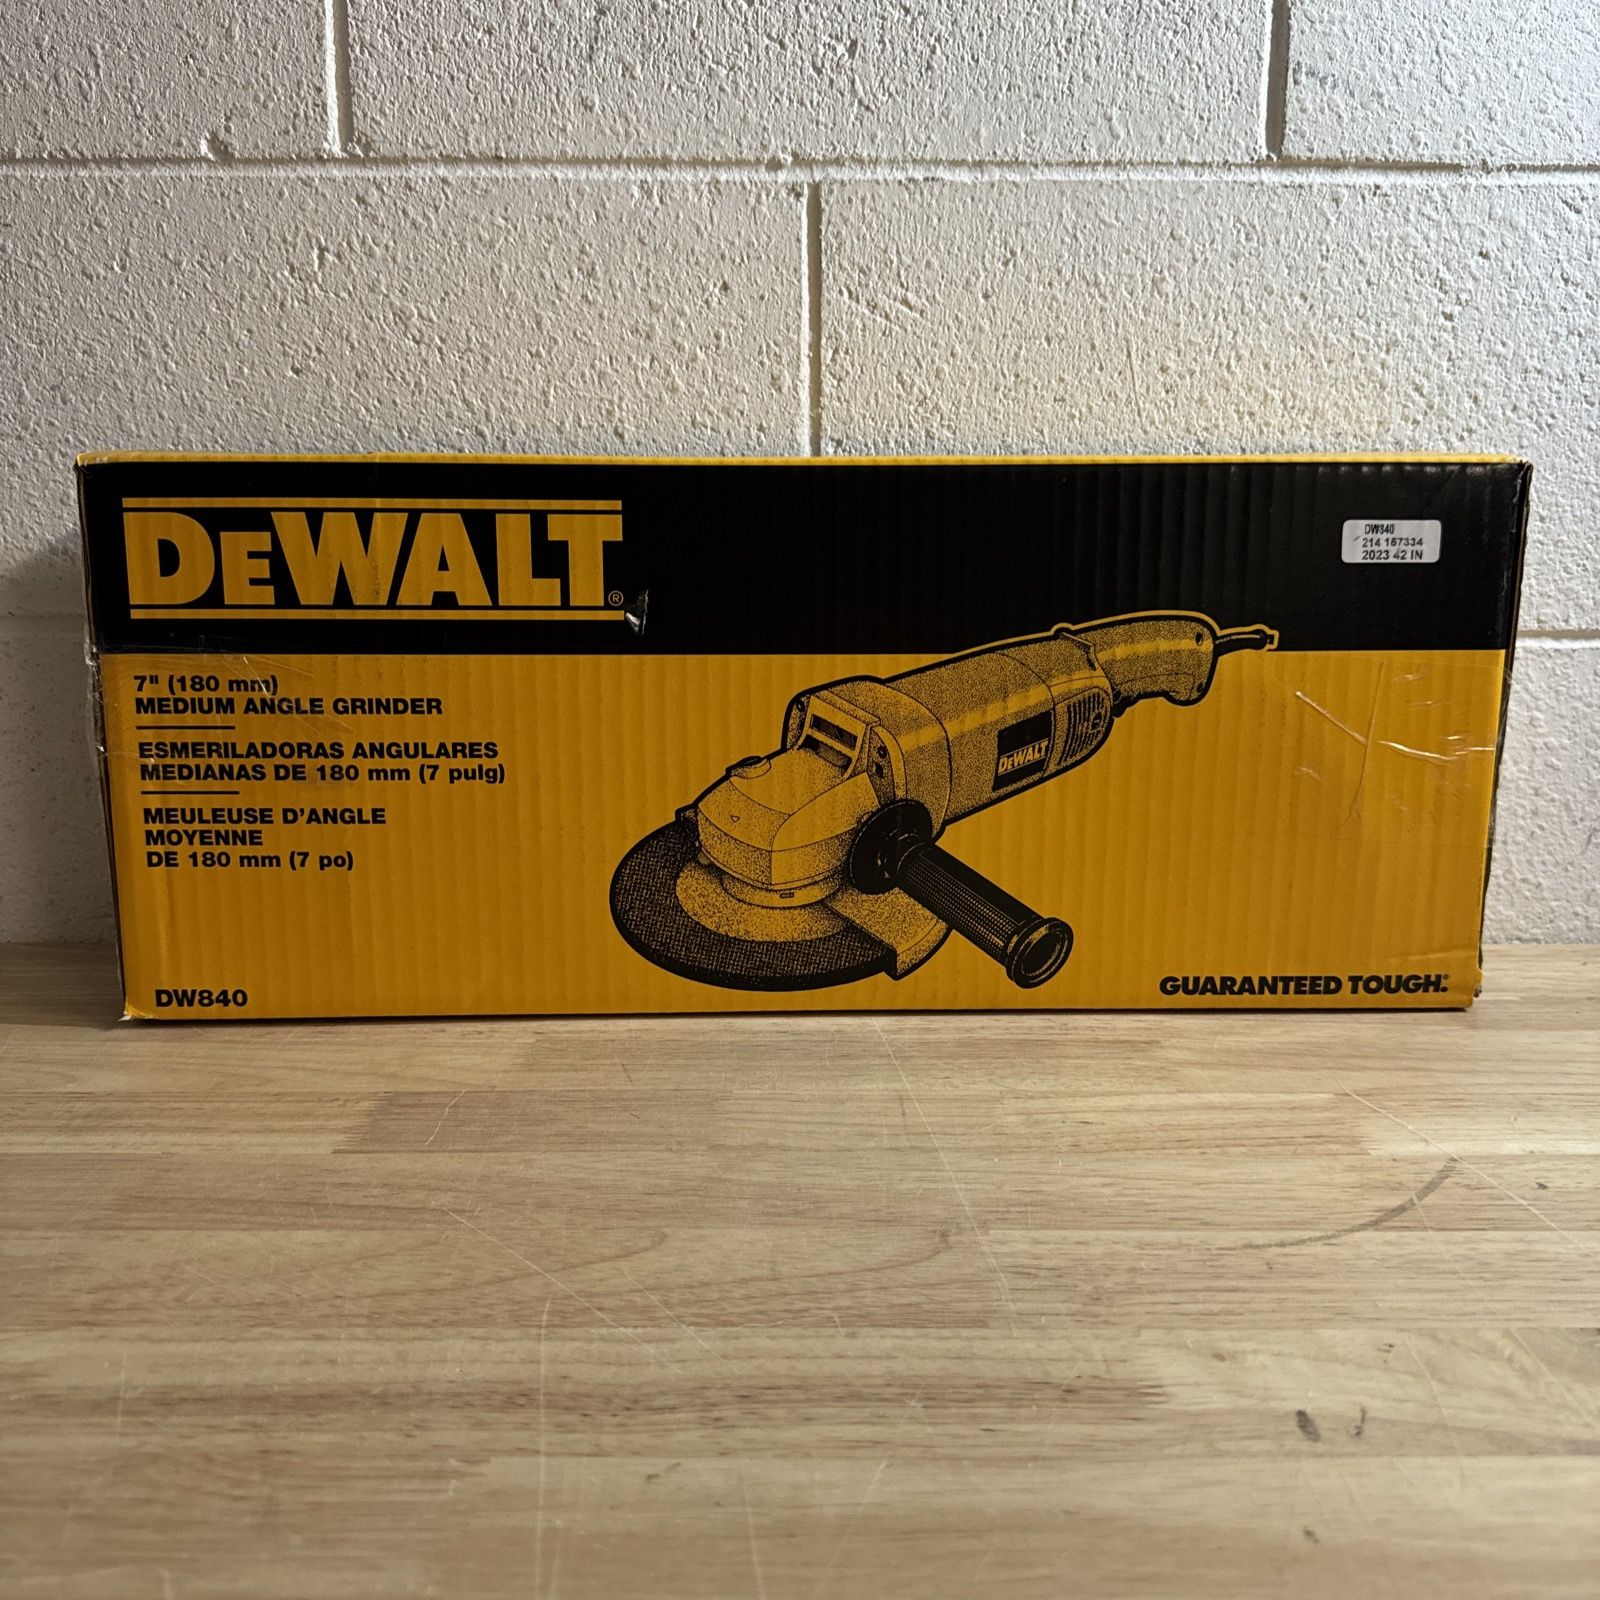 DEWALT Heavy-duty 7in Medium Angle Grinder - DW840 - NEW -